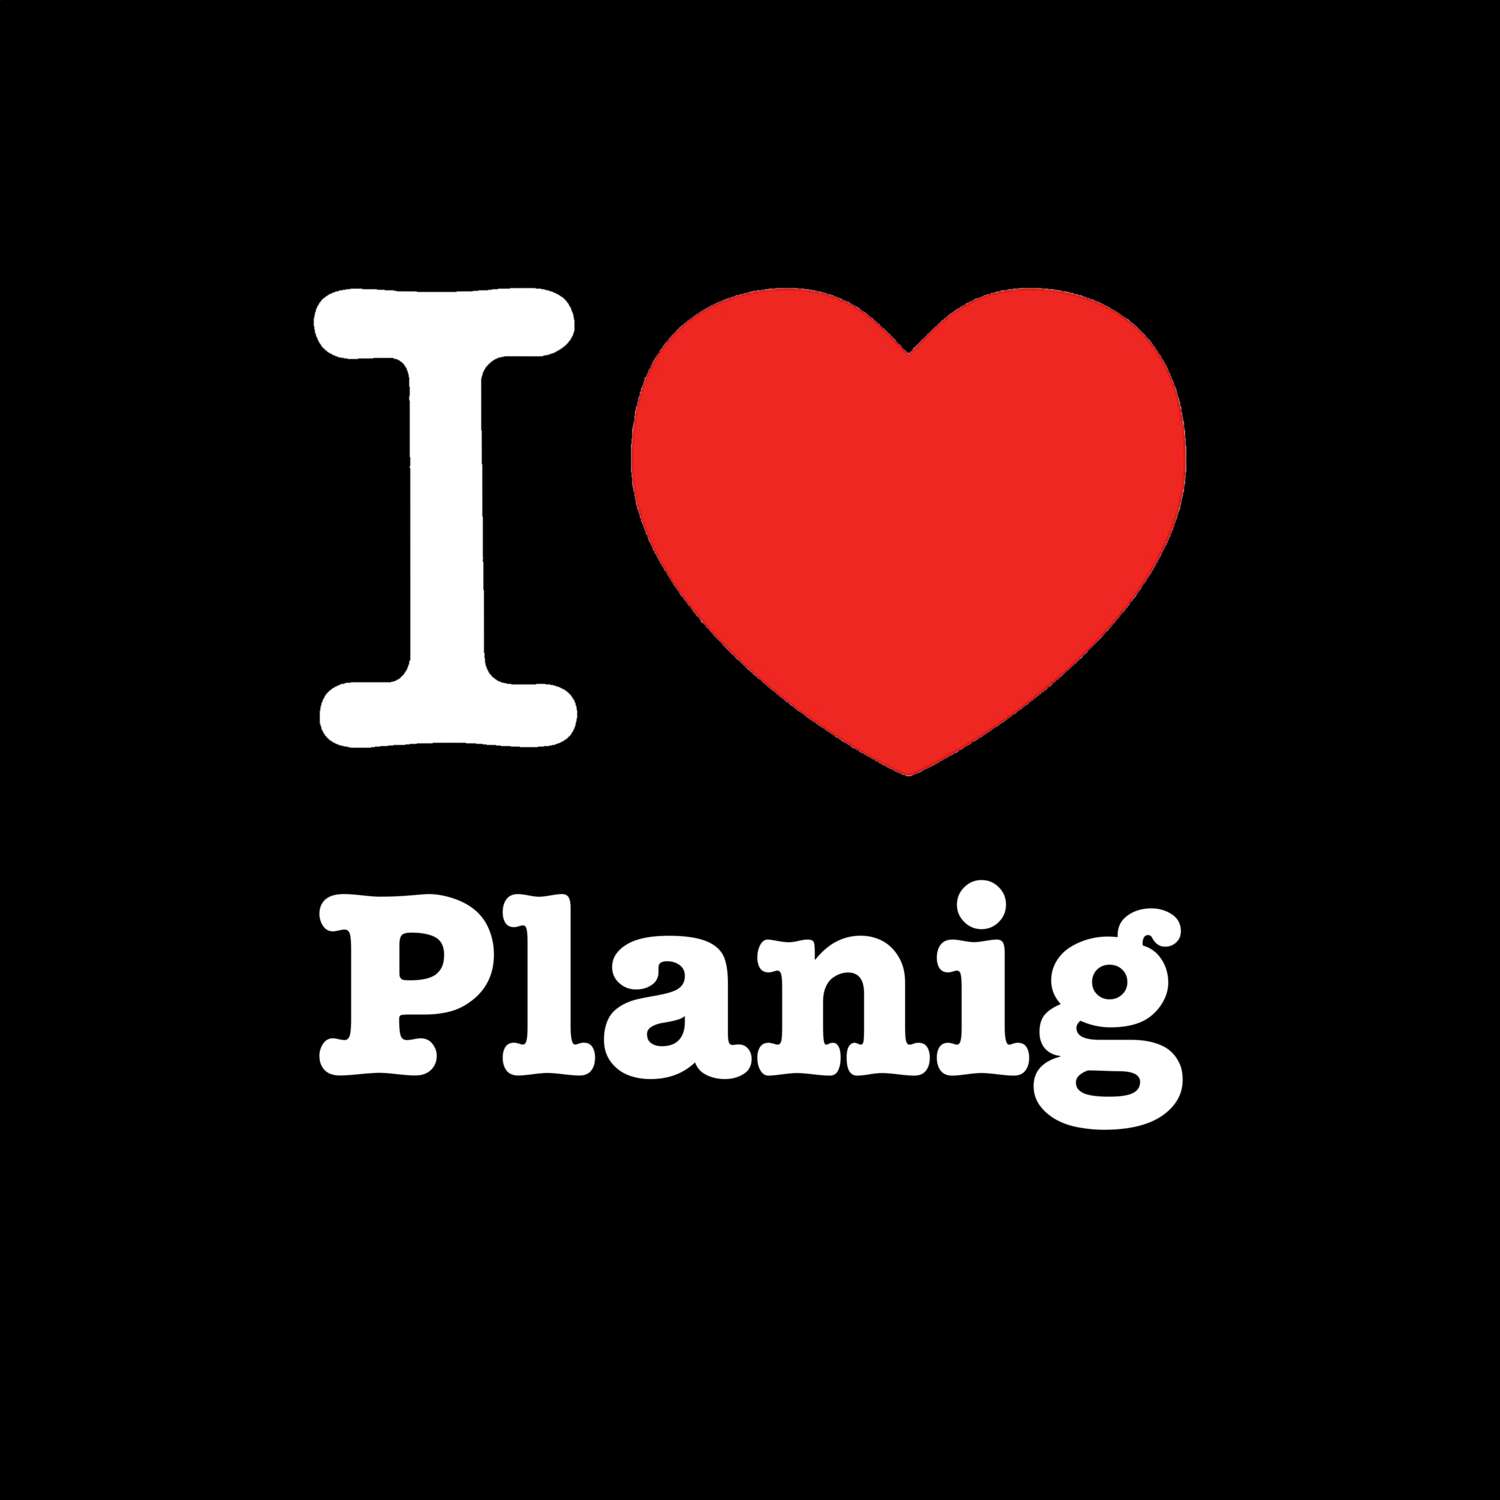 Planig T-Shirt »I love«